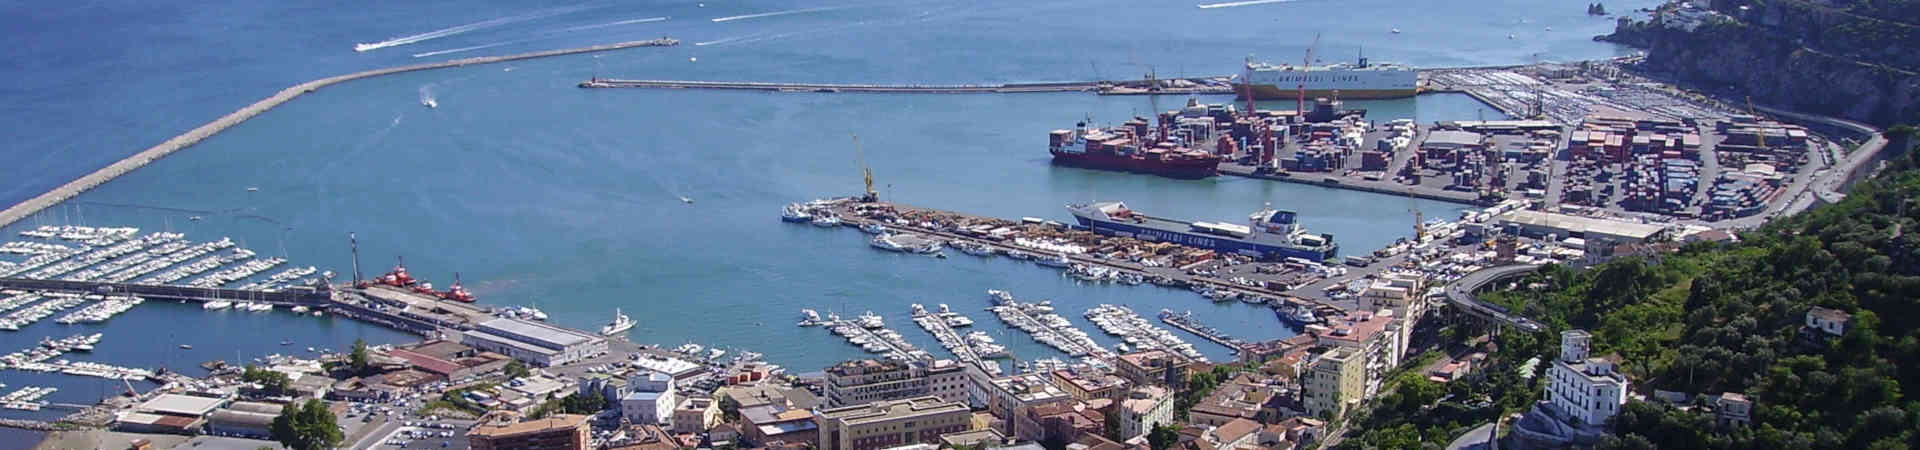 Imatge recurs del port de destinació Salern per a la ruta en ferry Malta - Salern